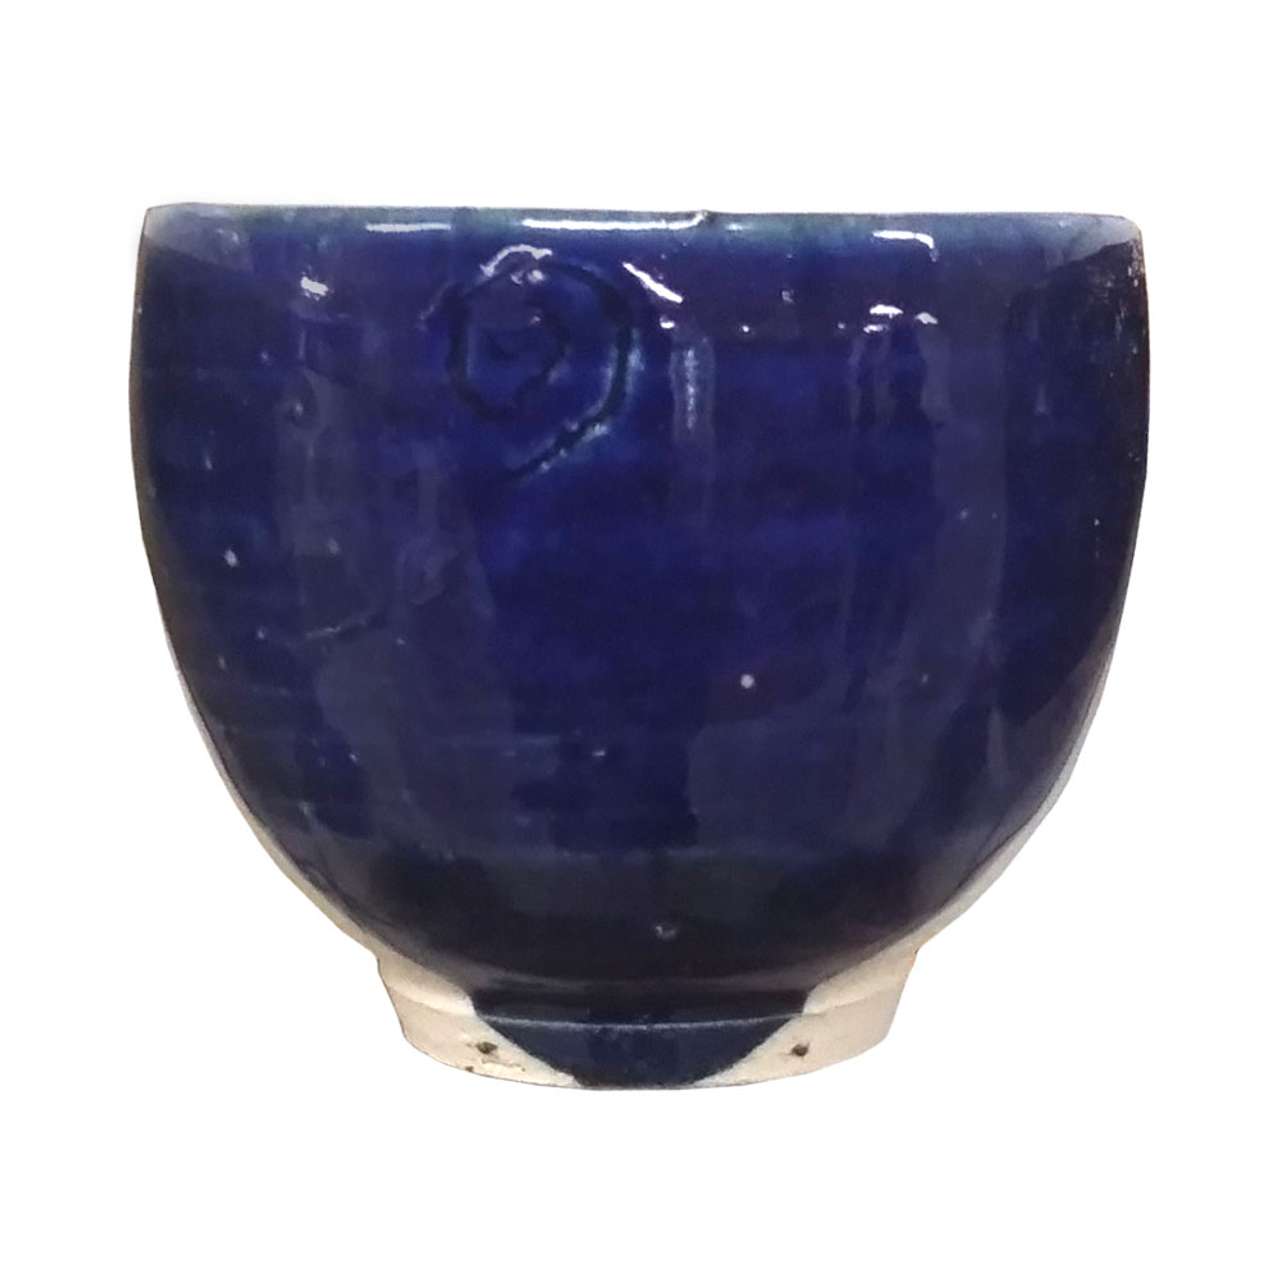 い出のひと時に、とびきりのおしゃれを！ 陶芸用品 陶芸 釉薬 青ガラス釉 2リットル 液体釉薬